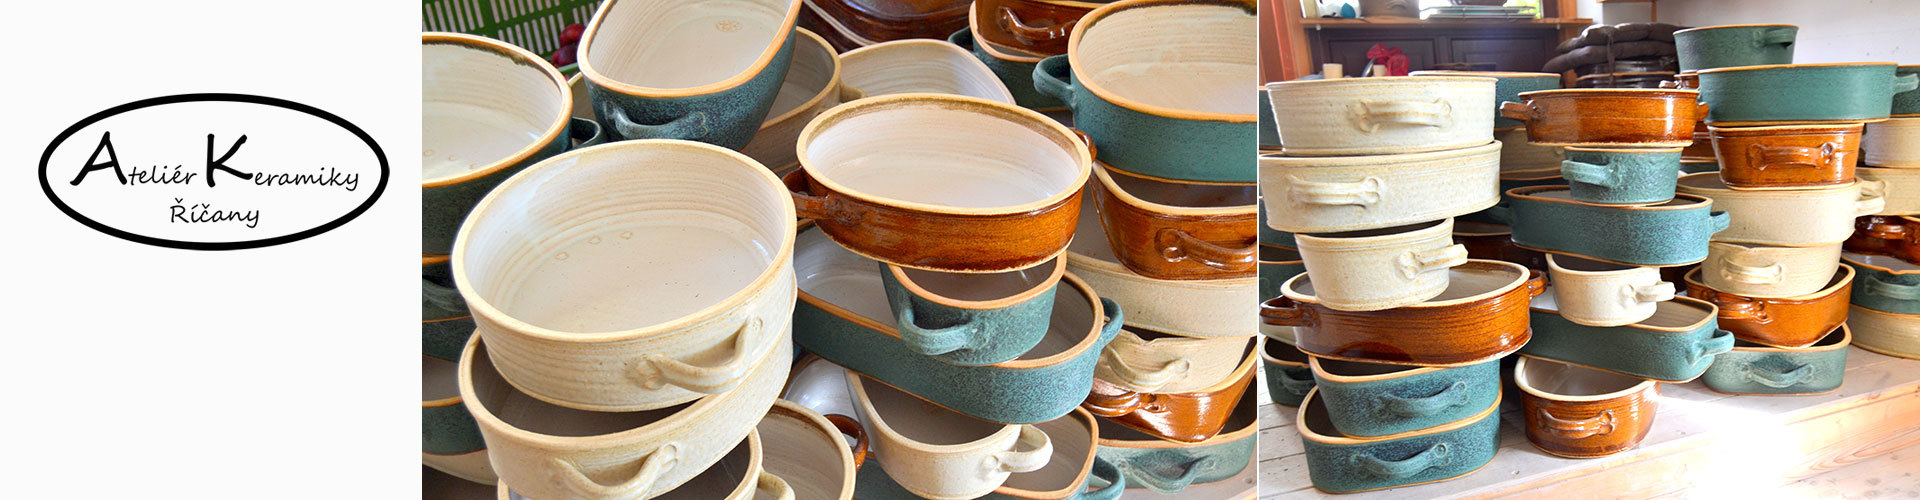 Atelier keramiky